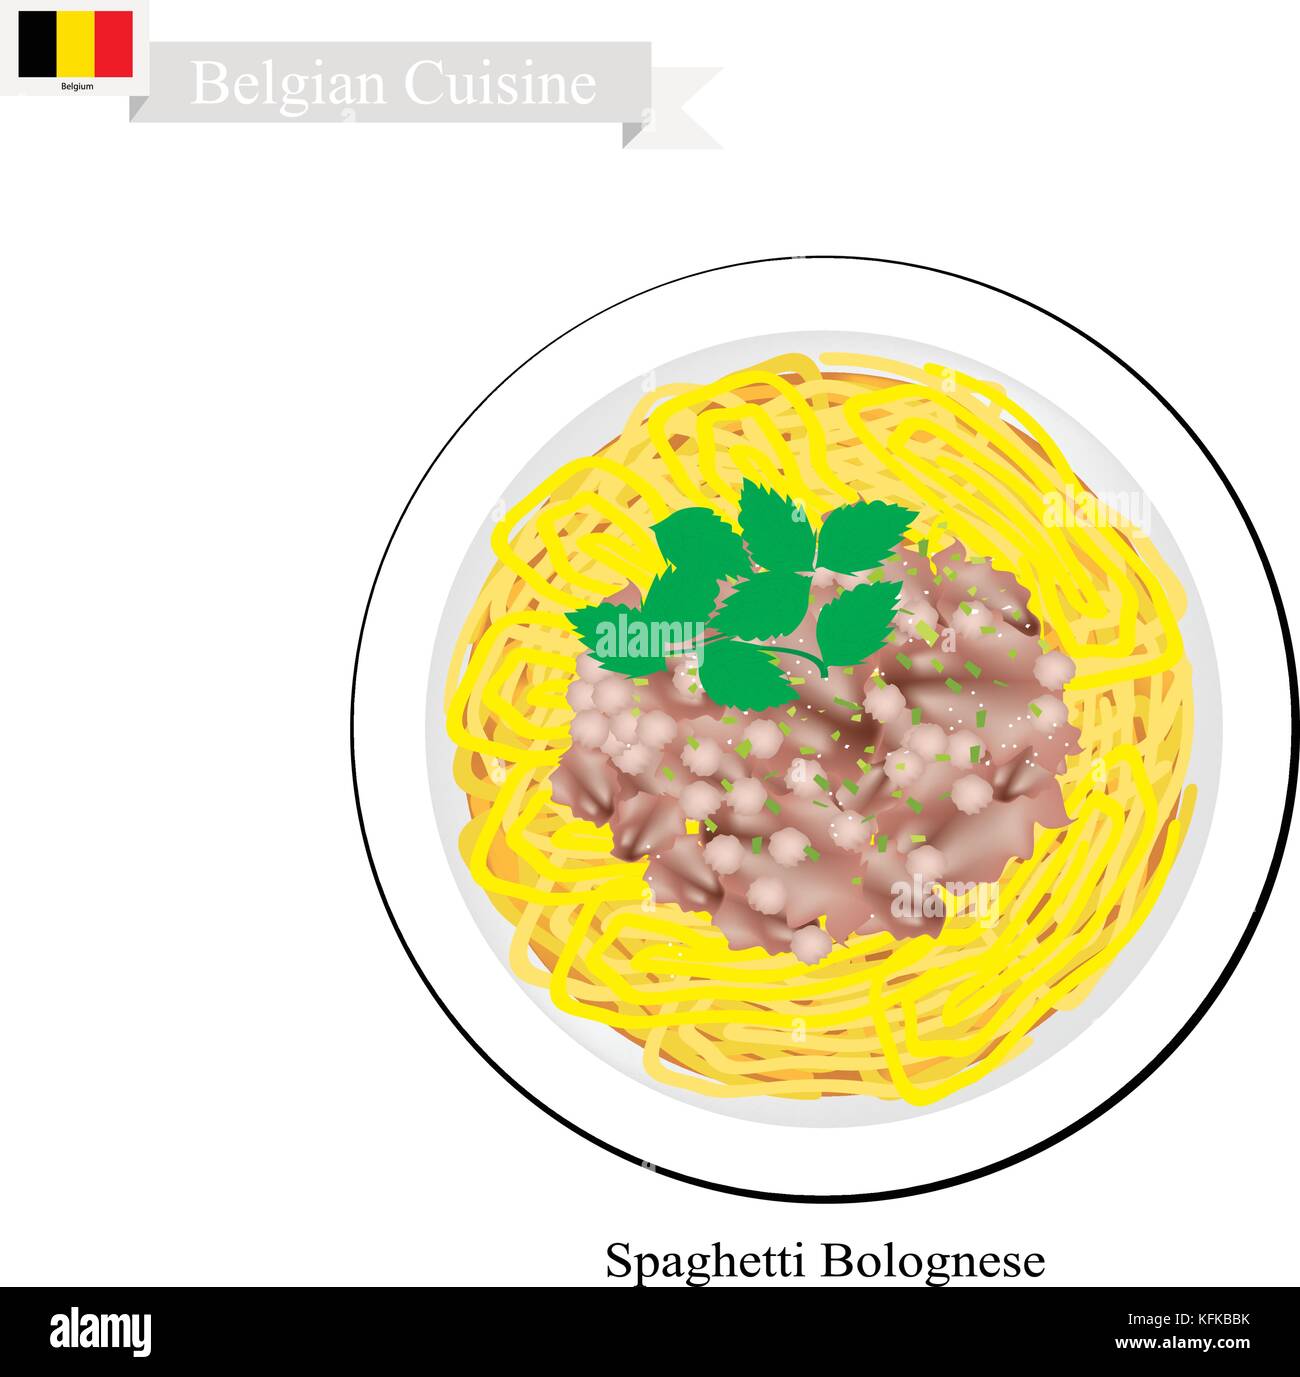 Cucina belga, illustrazione di spaghetti alla bolognese o il tradizionale bolognese con le carni bovine macinate, salsa di pomodoro, formaggio parmigiano e basilico. Uno dei mo Illustrazione Vettoriale